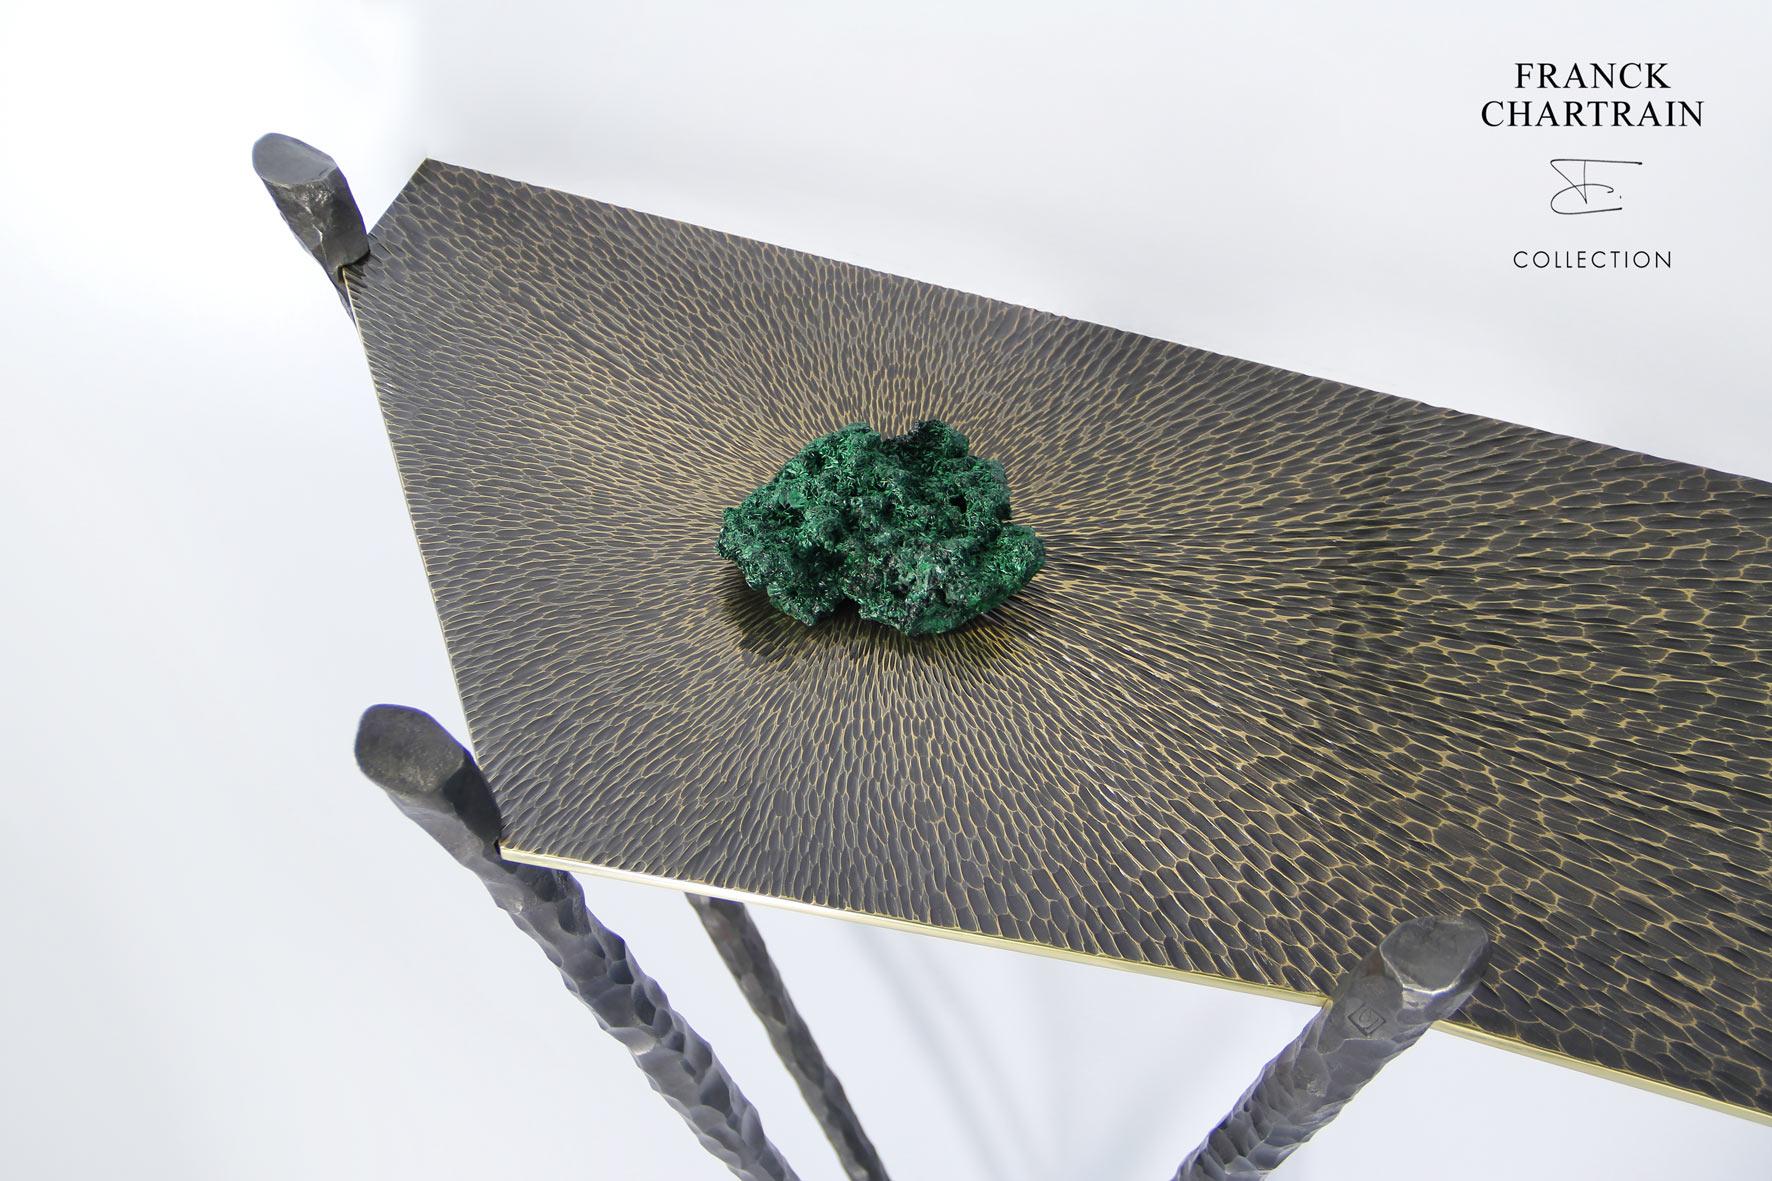 Cette magnifique table console a été fabriquée à la main par Franck Chartrain, un célèbre artiste-designer français.

Le plateau angulaire et élancé en bronze poli est gougé d'arêtes vives.
Sa texture travaillée avec une finition satinée foncée